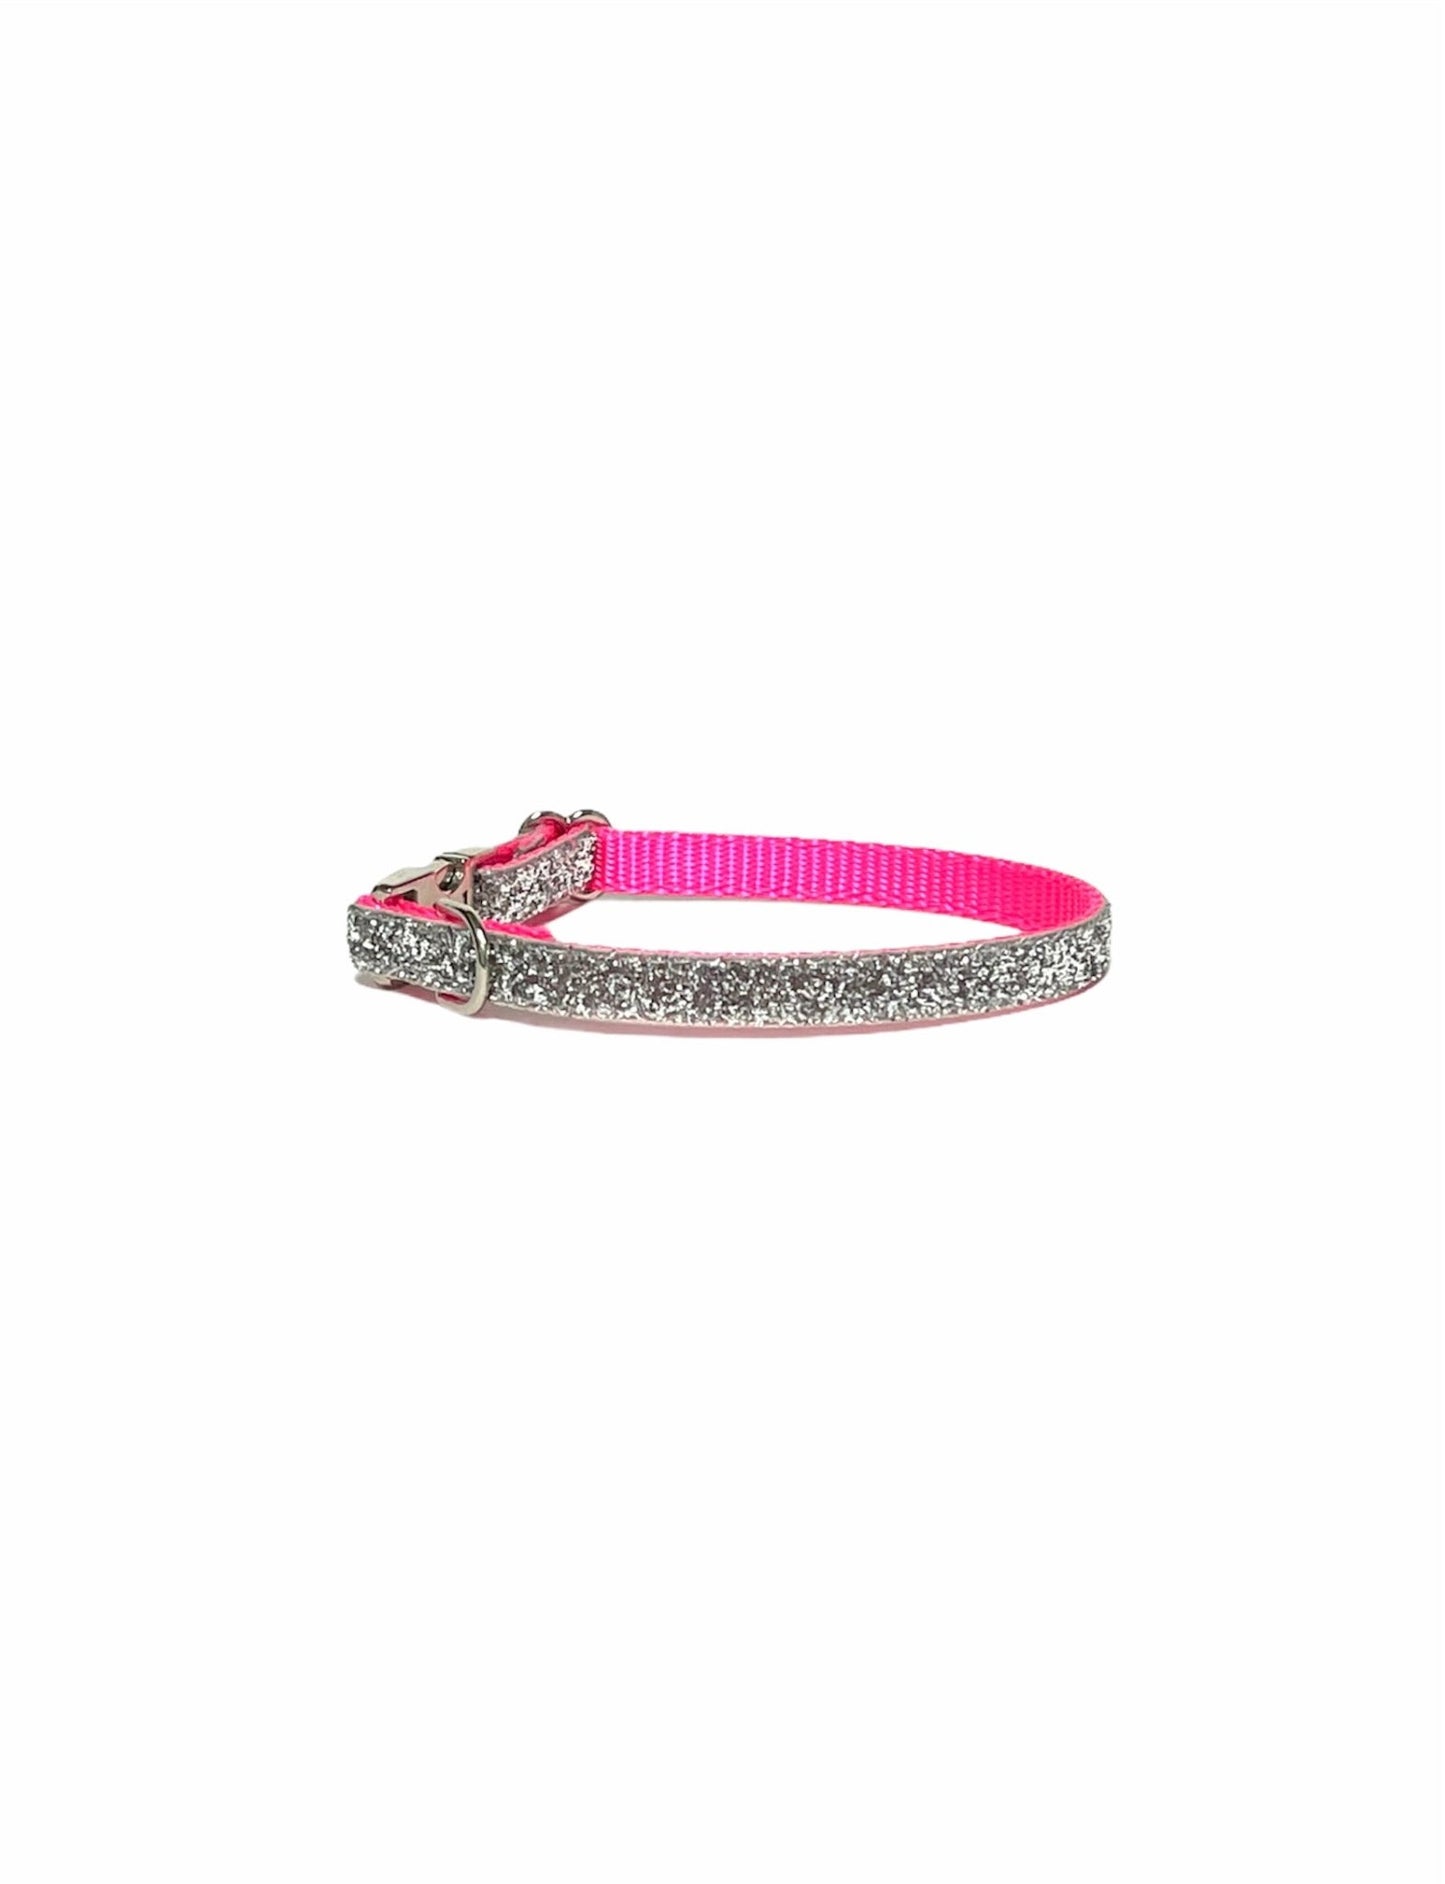 Dainty Silver Neon Pink Sparkle Dog Collar - muttsnbones